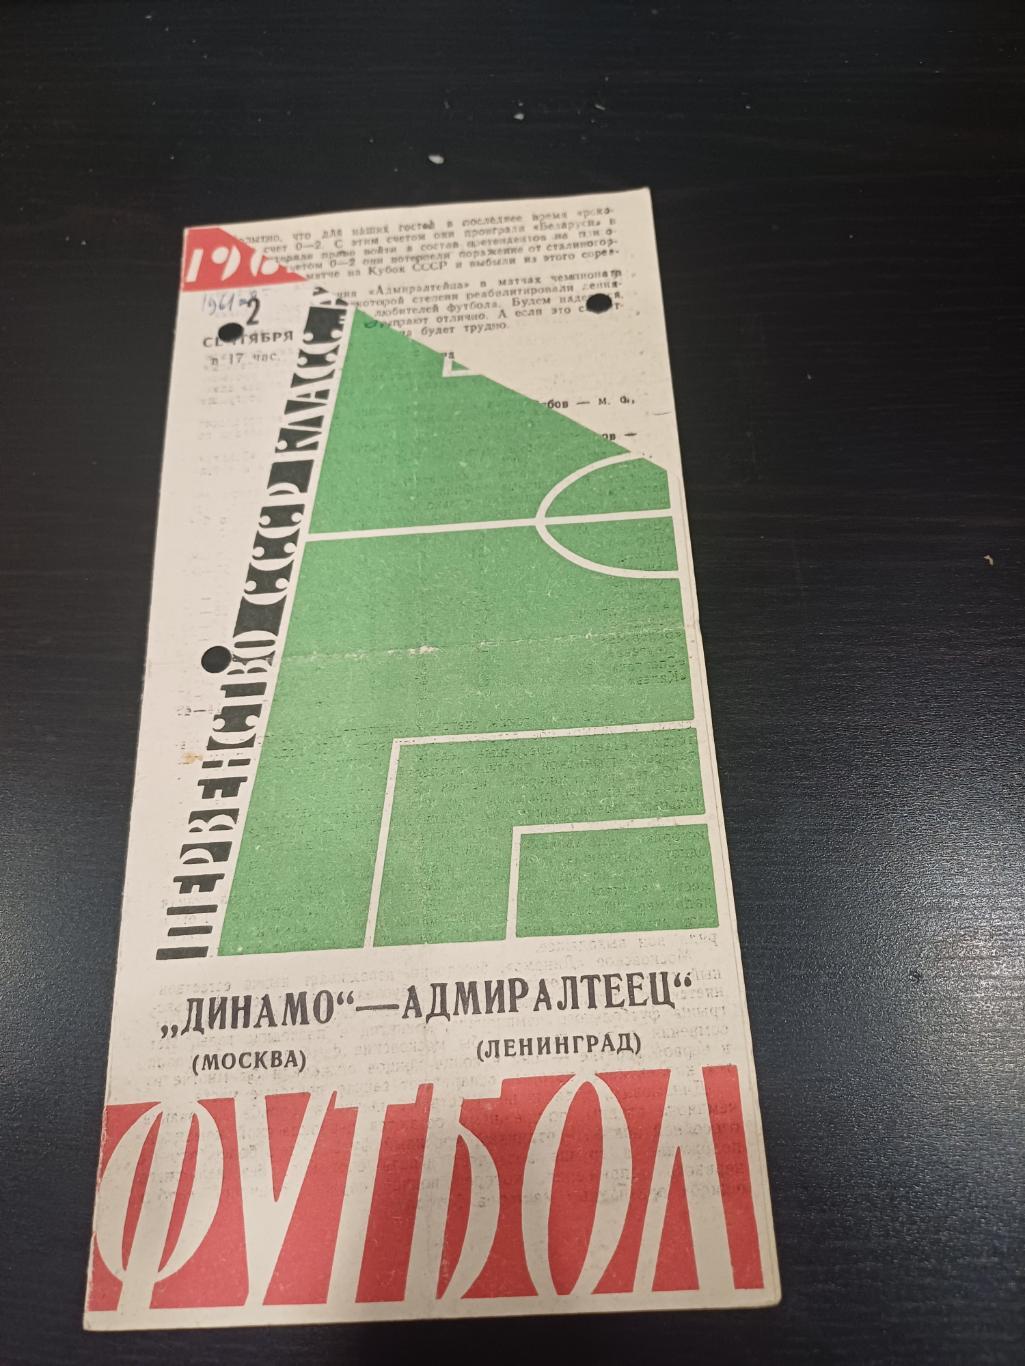 Адмиралтеец - Динамо (Москва) 1961